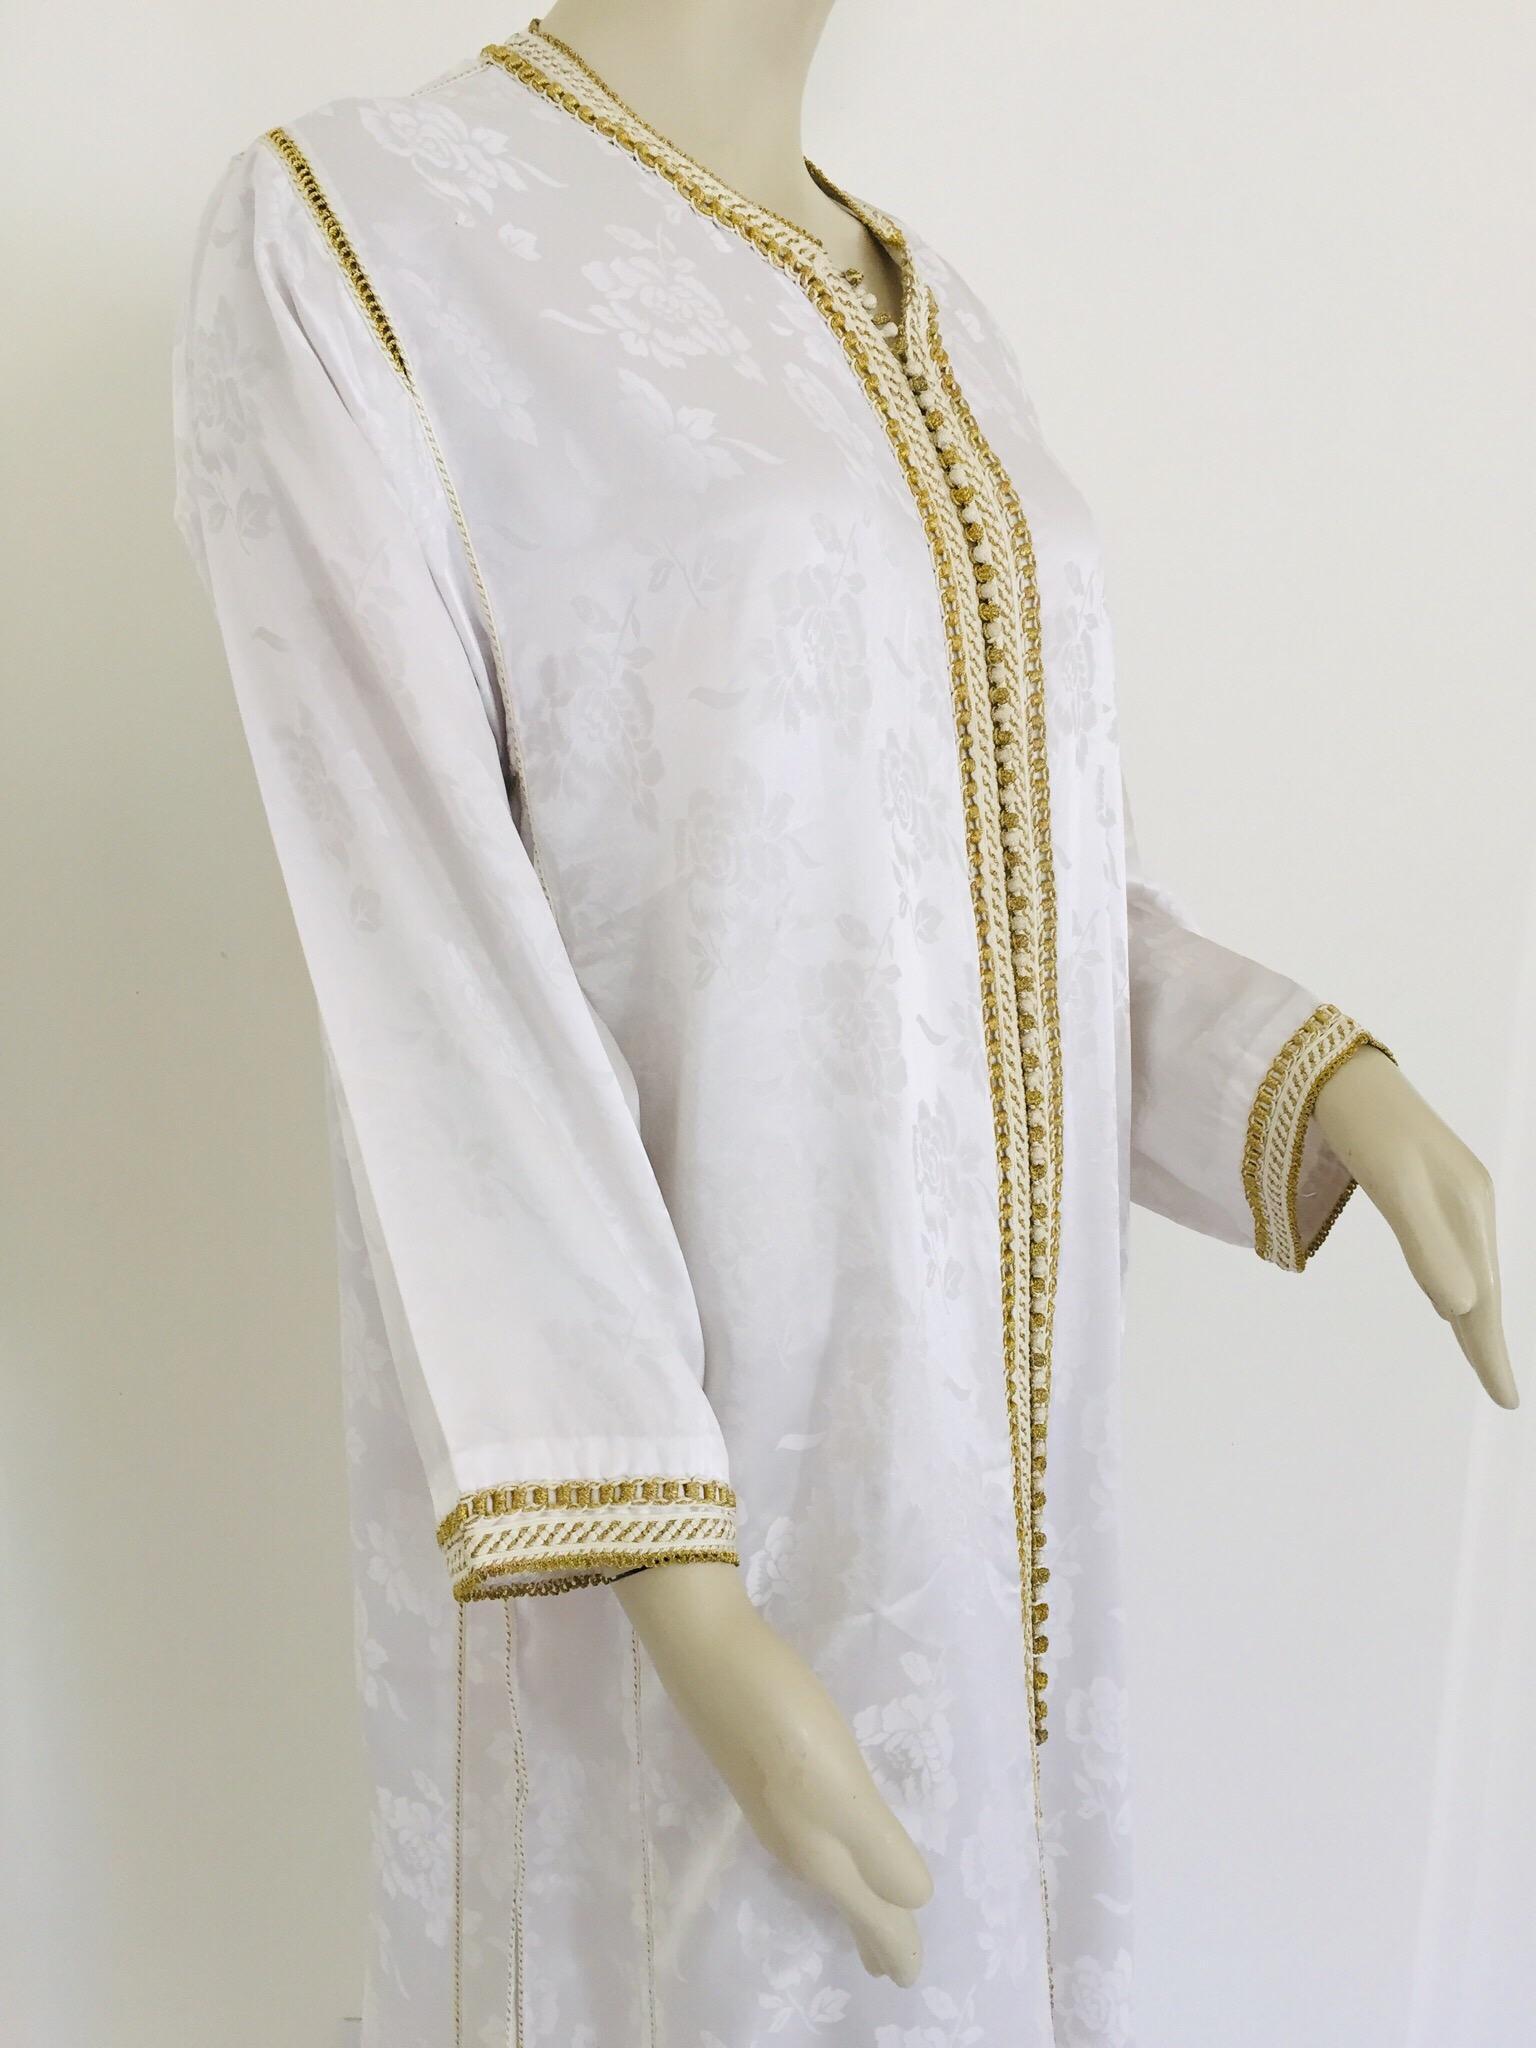 Marokkanischer Kaftan mit weißer Blumenstickerei, Goldbesatz, bestickt,
ca. 1970er Jahre.
Das lange Maxikleid mit Kaftanbesatz ist vollständig von Hand bestickt und verschönert.
Einzigartiges marokkanisches Abendkleid aus dem Nahen Osten.
Der Kaftan